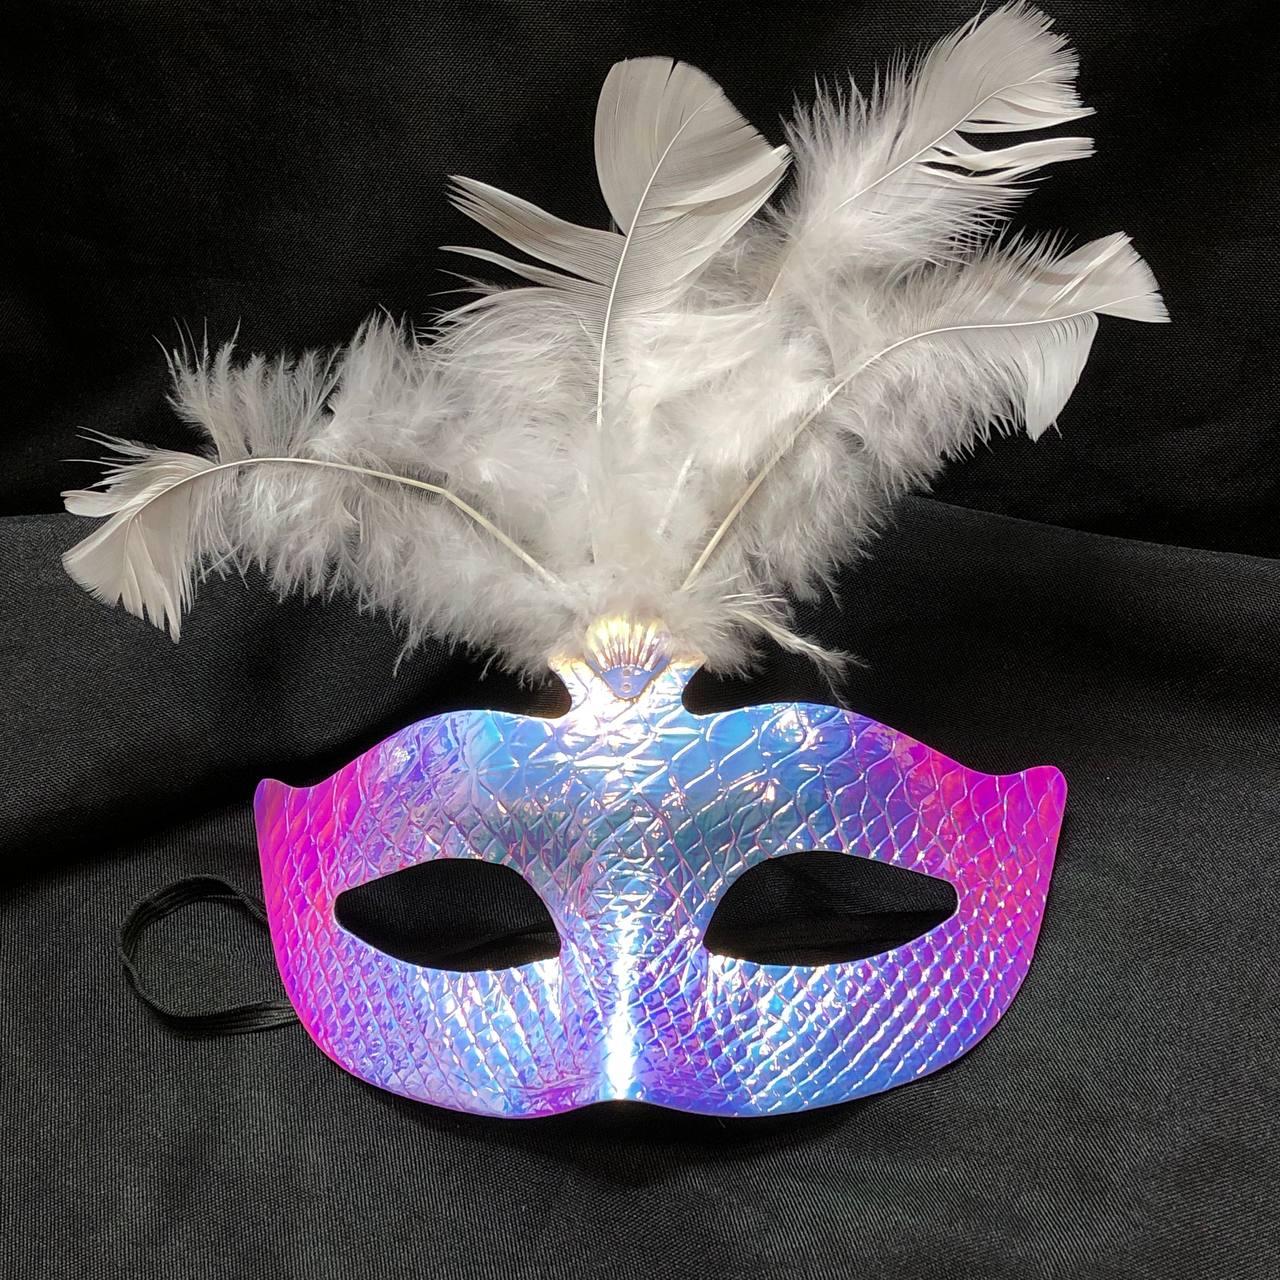 Венецианская маска переливающаяся с перьями голубой хамелеон, фото 1